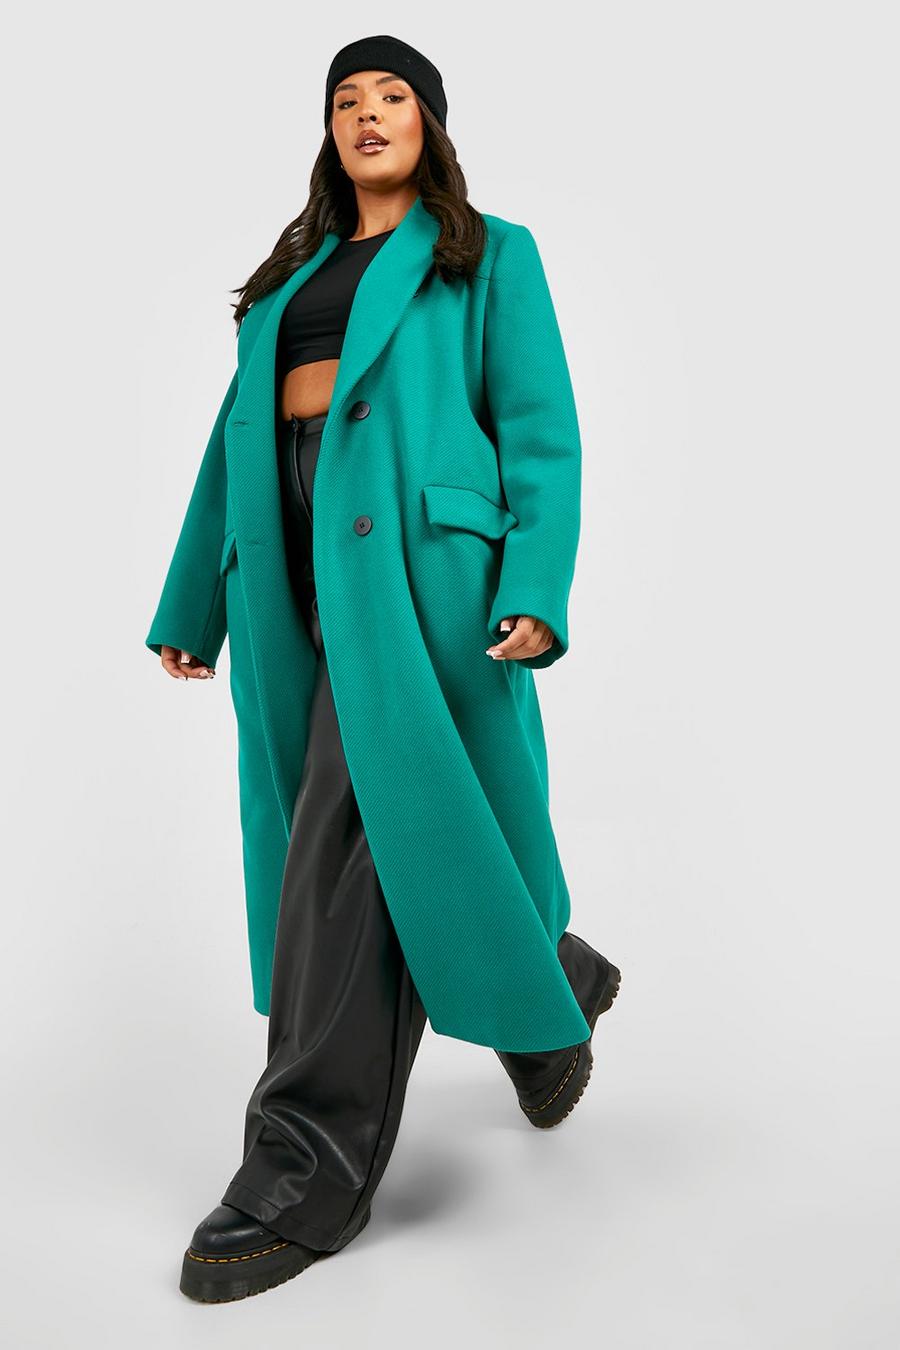 Cappotto Plus Size Premium effetto lana in colori accesi, Bright green gerde